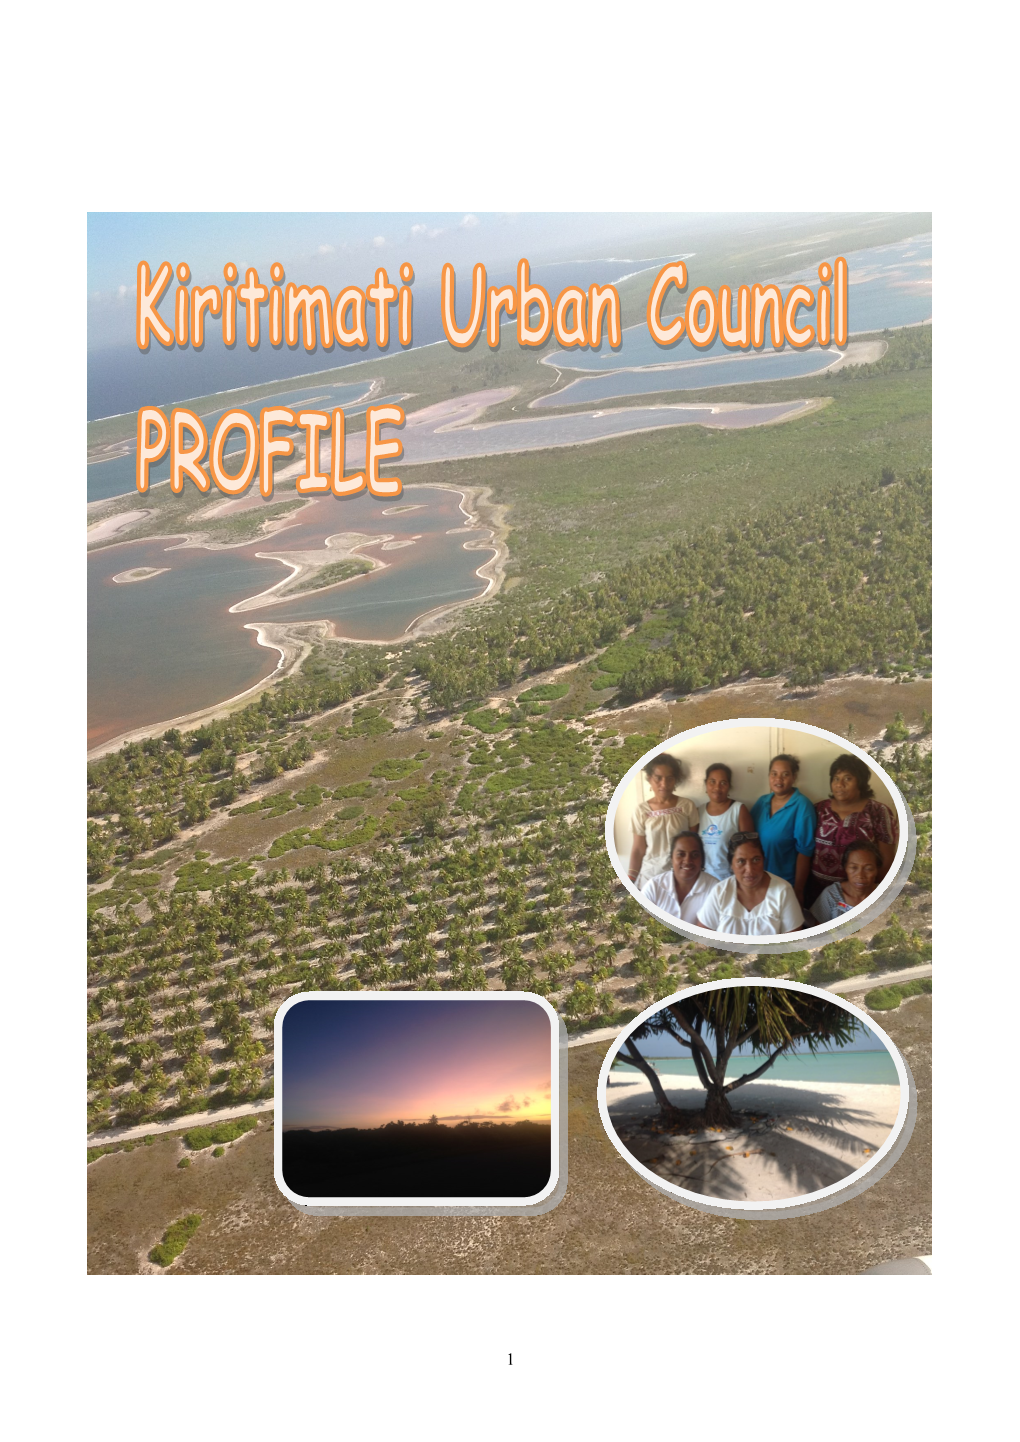 About Kiritimati Island 8